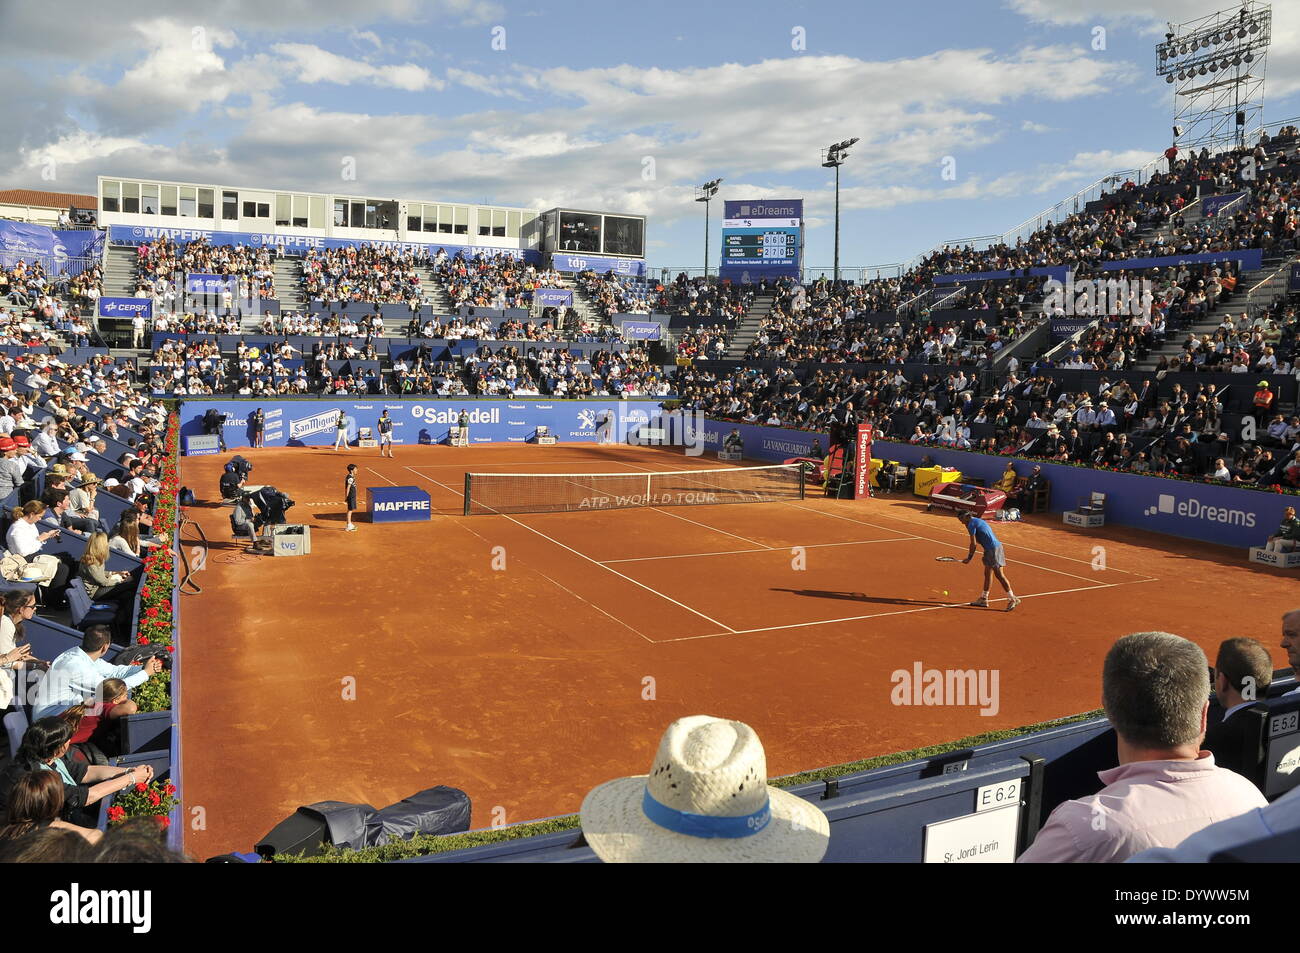 Barcelone, Espagne. Apr 25, 2014. Rafael Nadal contre Nicolas Almagro vue générale lors de la cinquième journée de l'ATP World Tour 500 sur l'ATP World Tour 2014, quarts de finale Open de Barcelone Banc Sabadell au Real Club de Tennis de Barcelone. Credit : fototext/Alamy Live News Banque D'Images